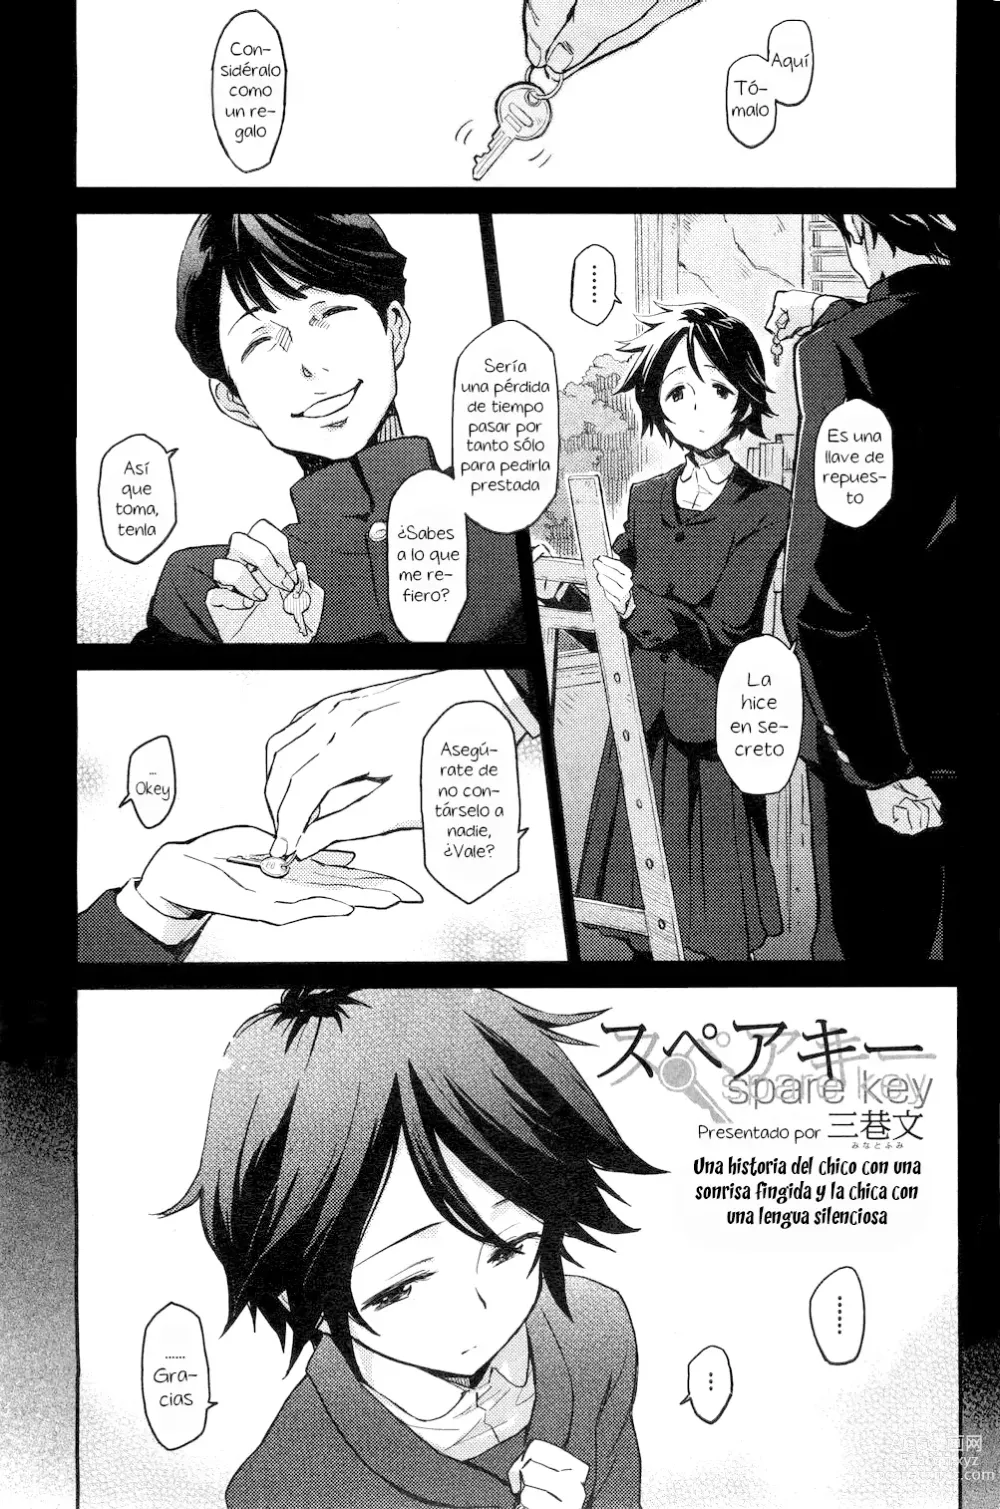 Page 1 of manga Spare Key